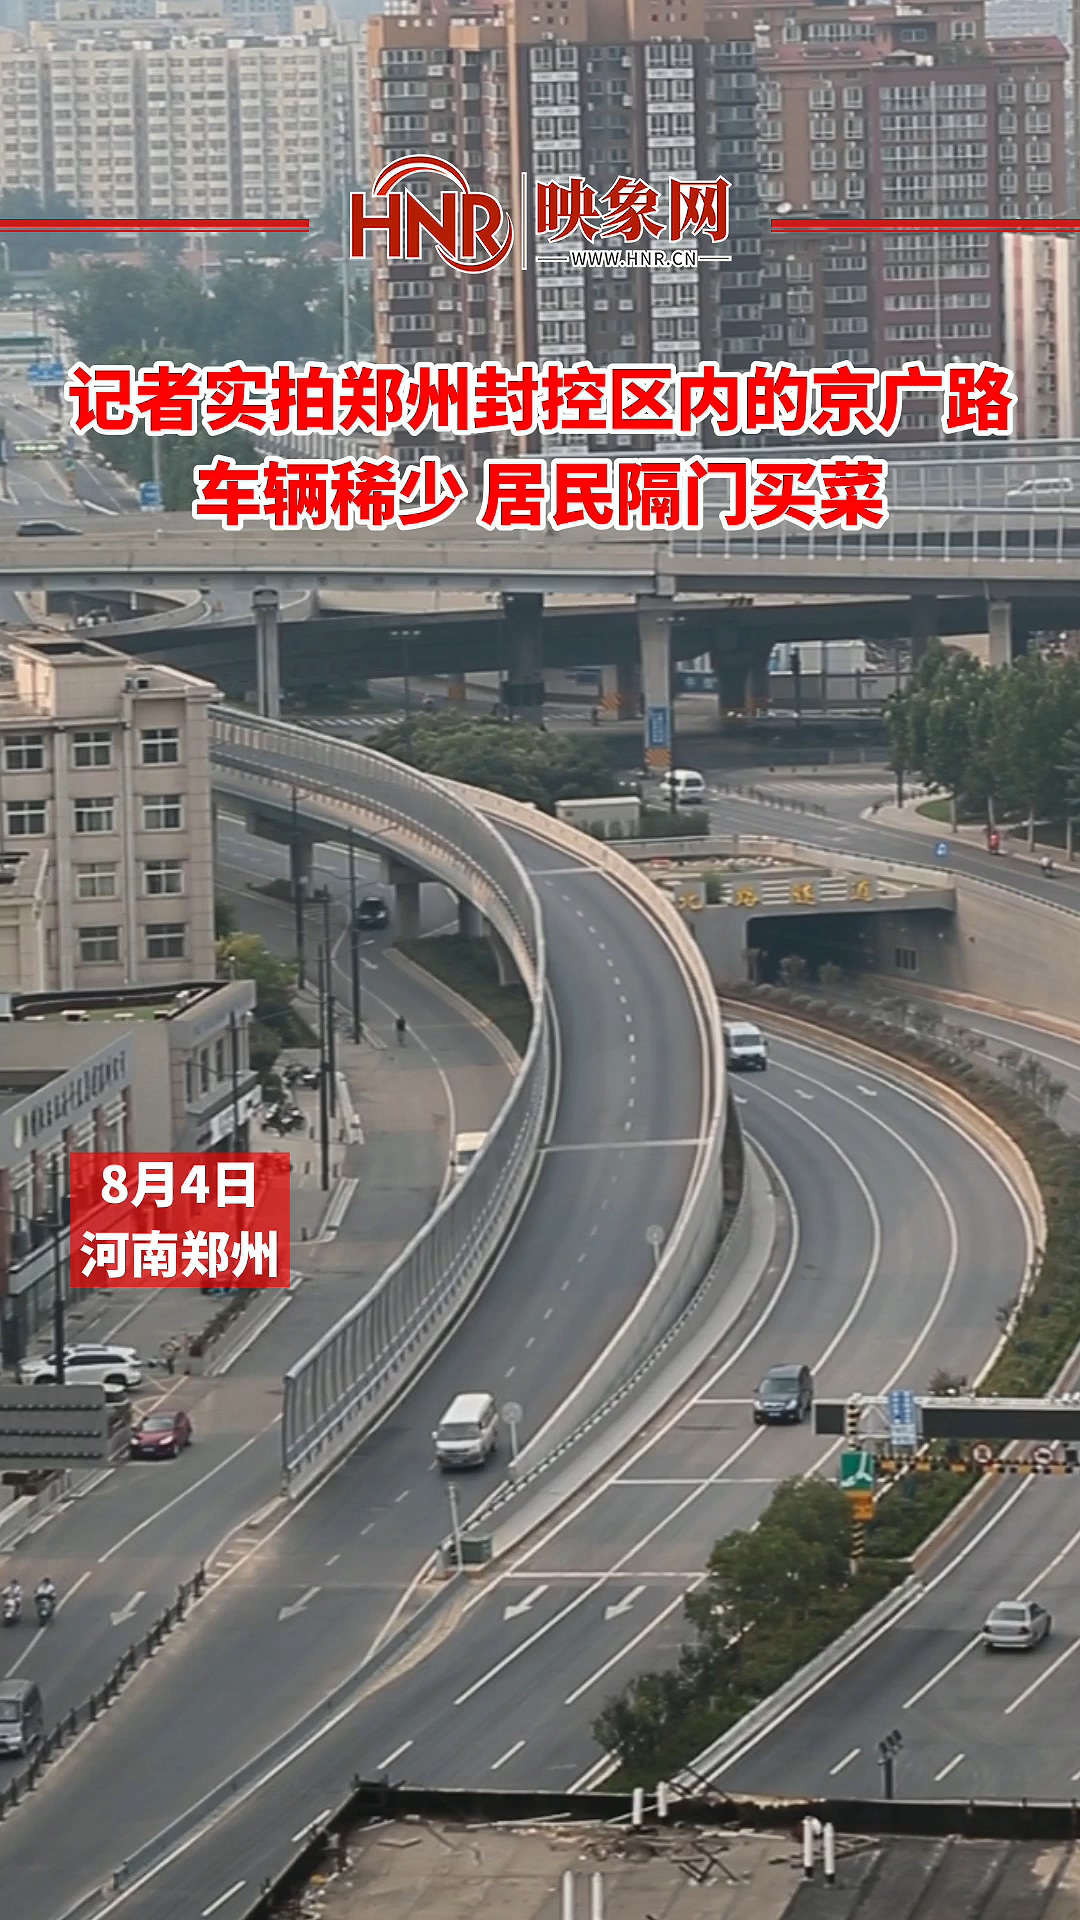 记者实拍郑州封控区的京广路 车辆稀少 居民隔门买菜